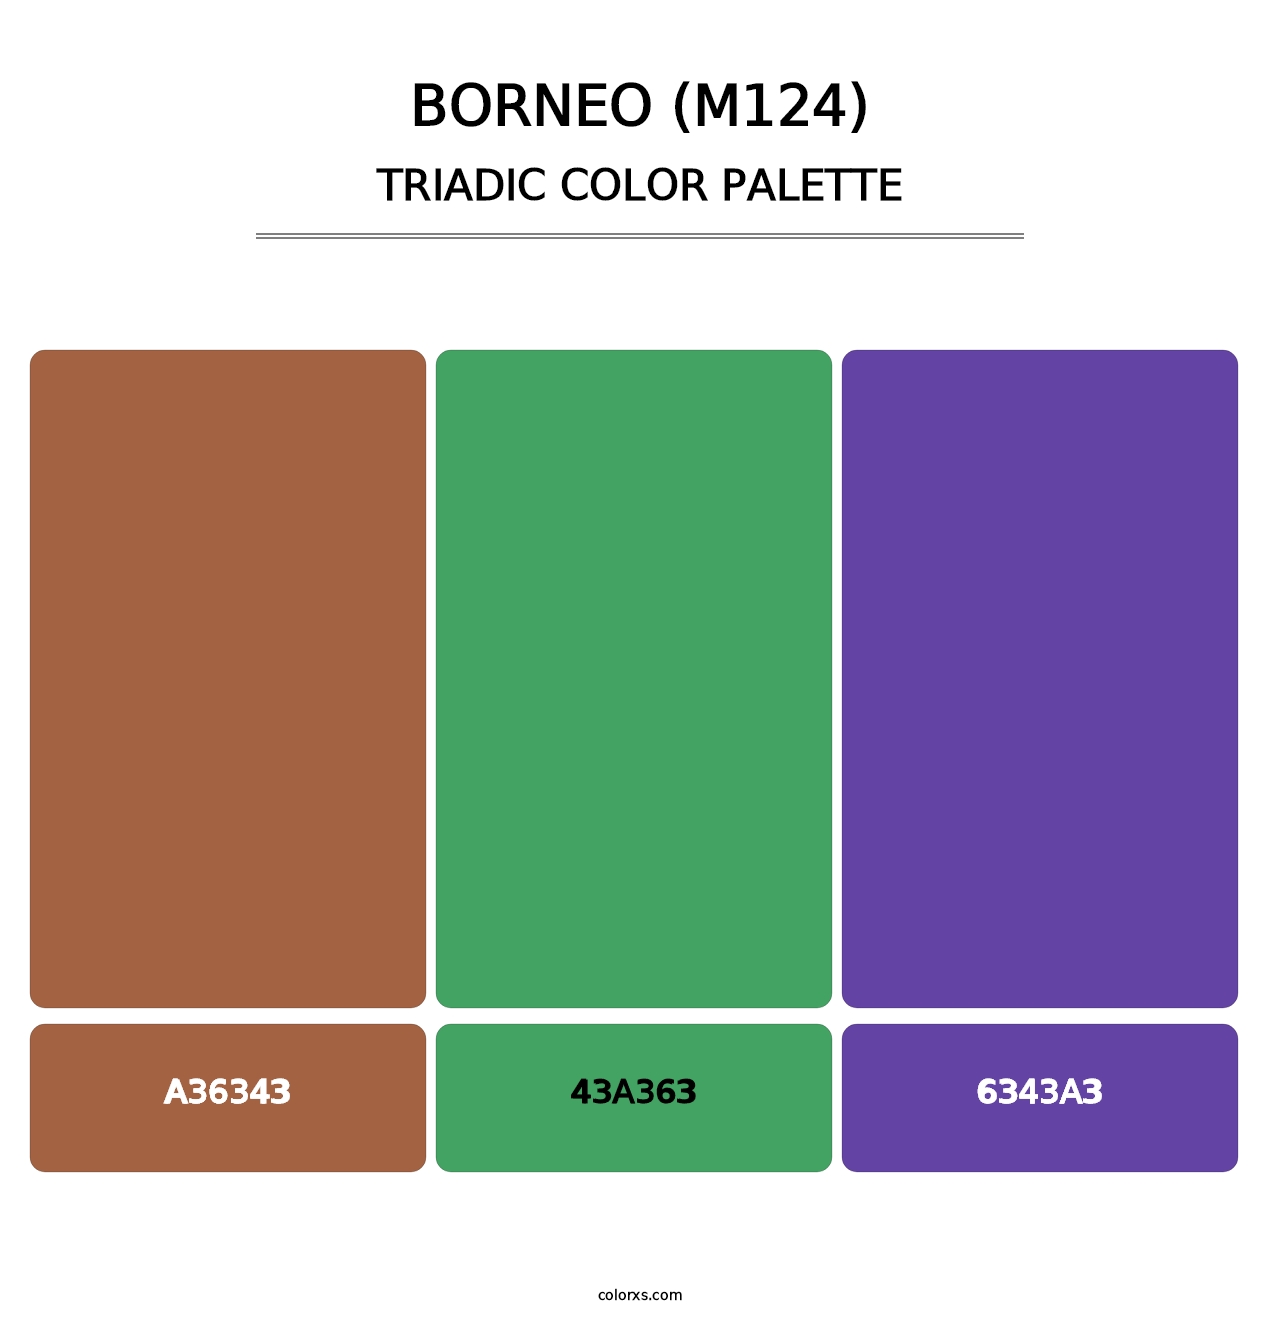 Borneo (M124) - Triadic Color Palette